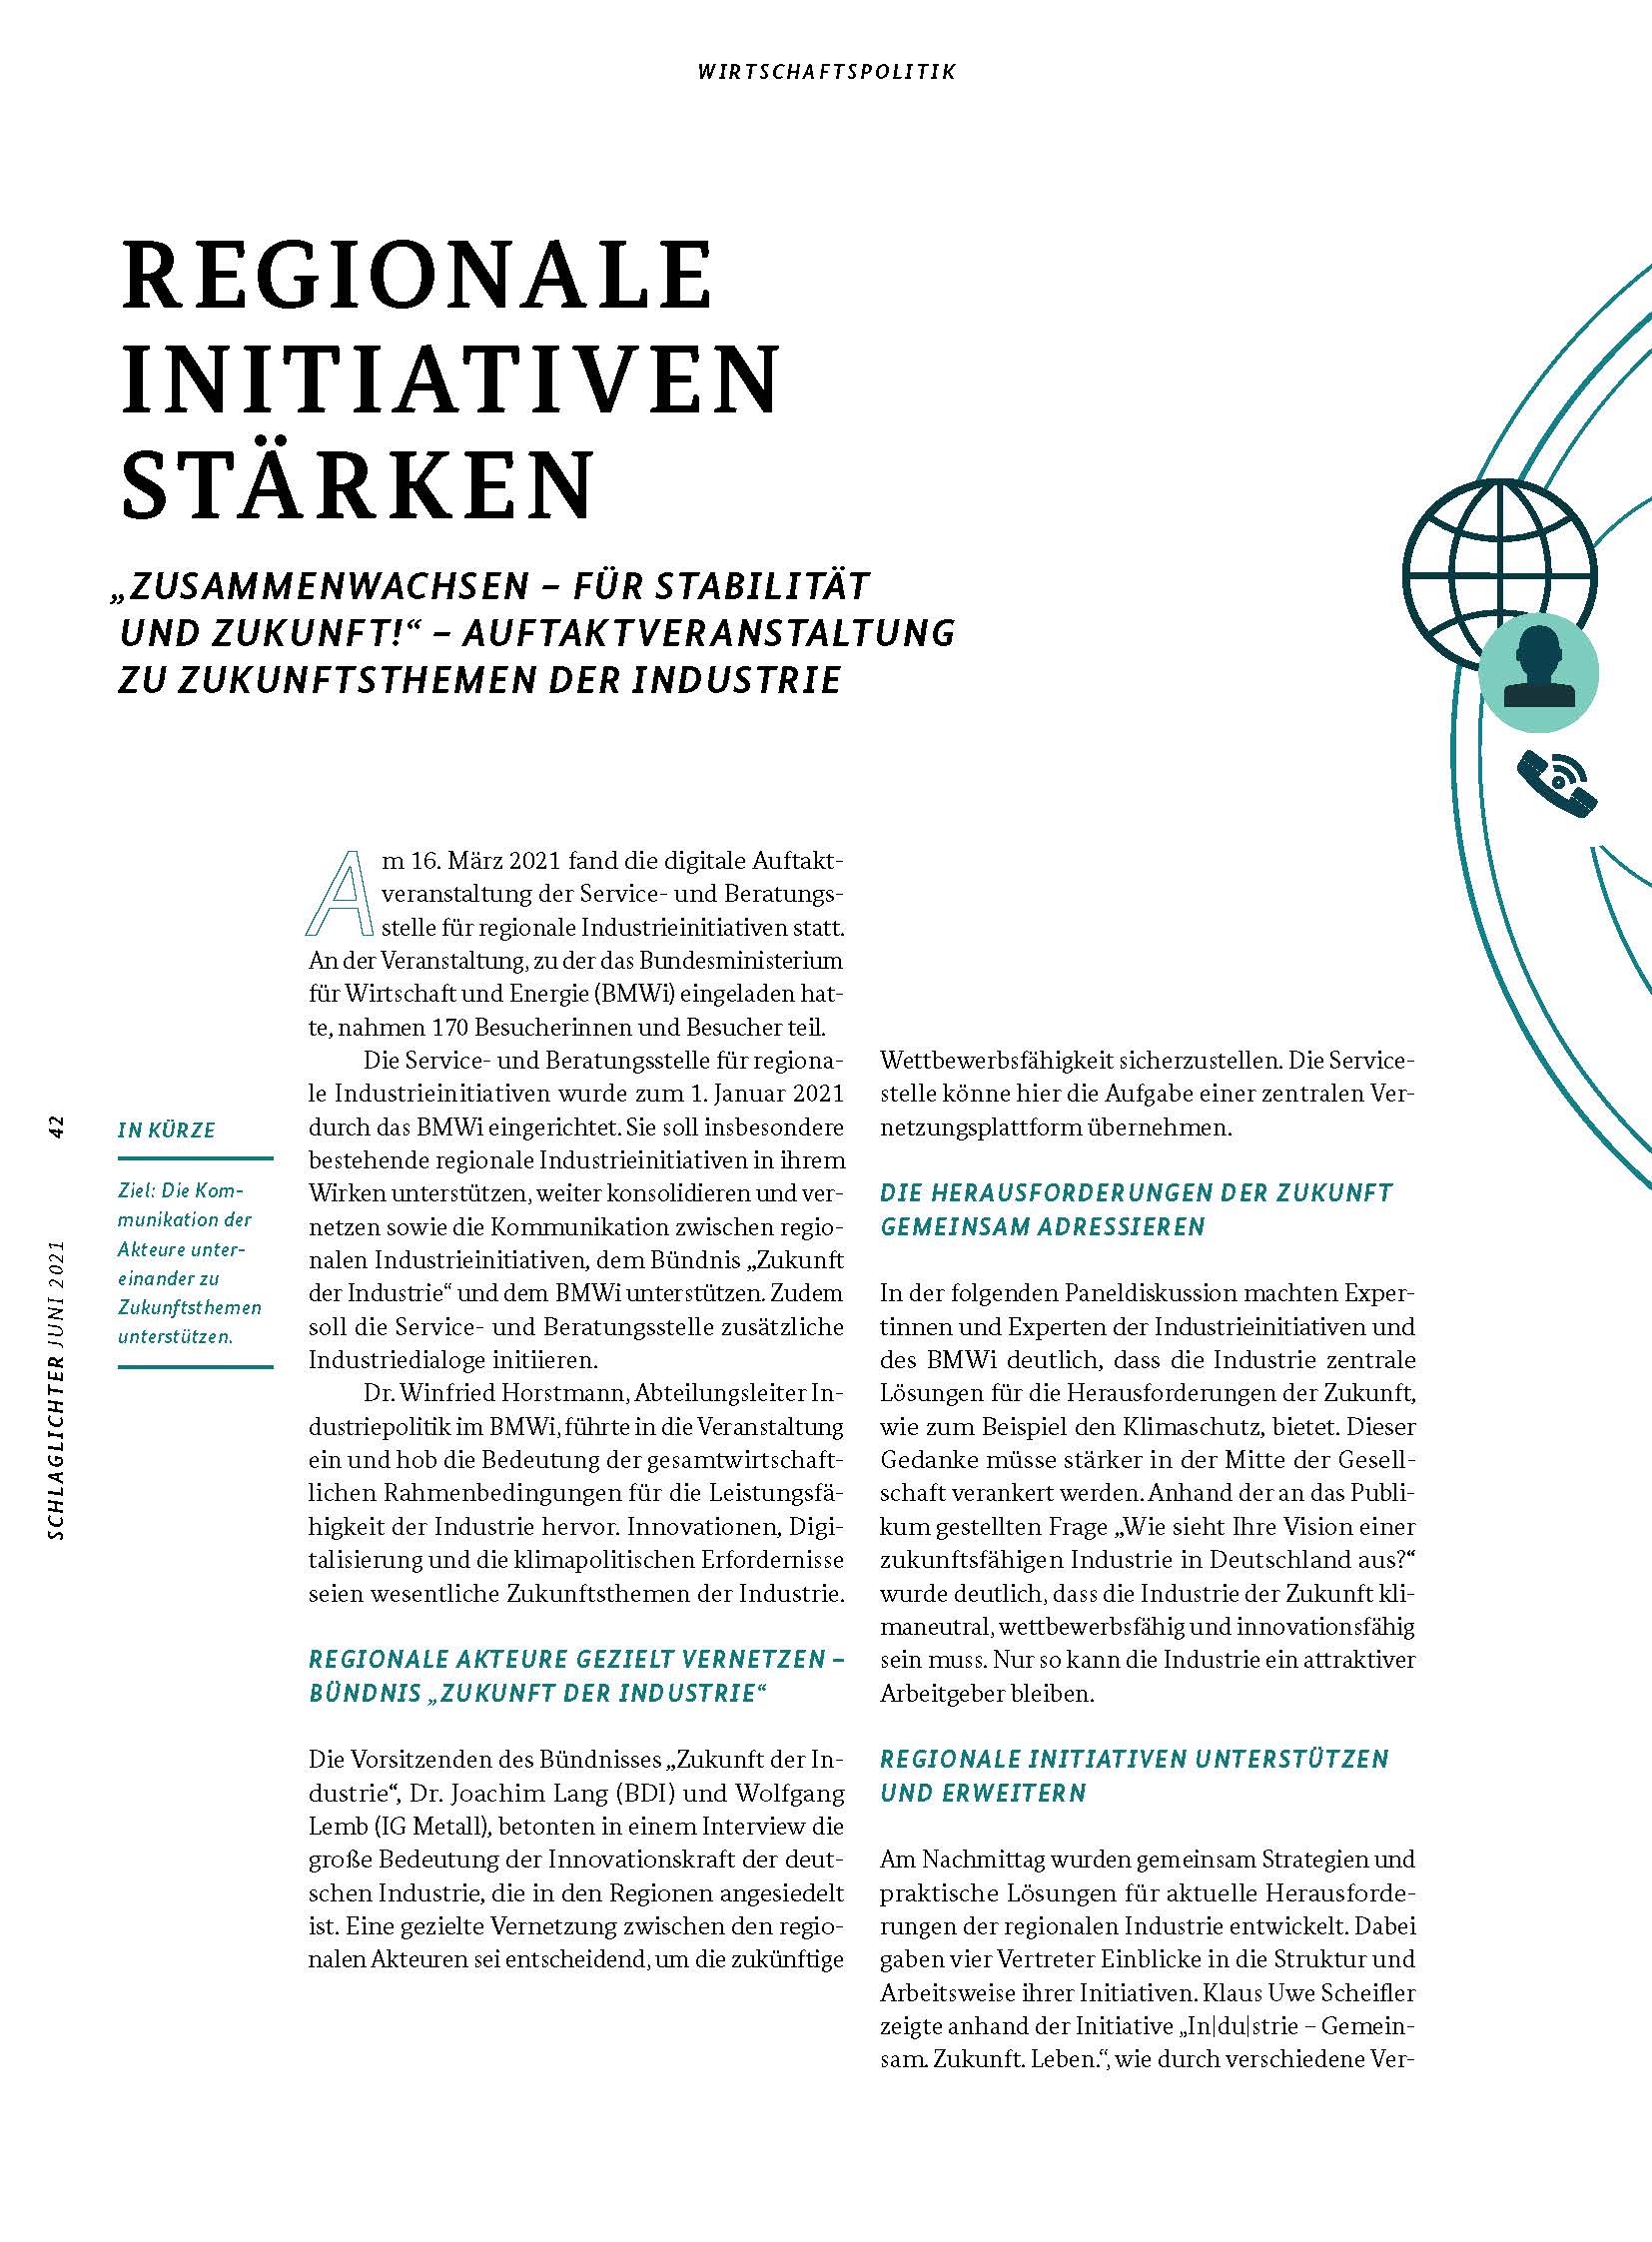 Cover der Publikation Schlaglichter der Wirtschaftspolitik "REGIONALE INITIATIVEN STÄRKEN"